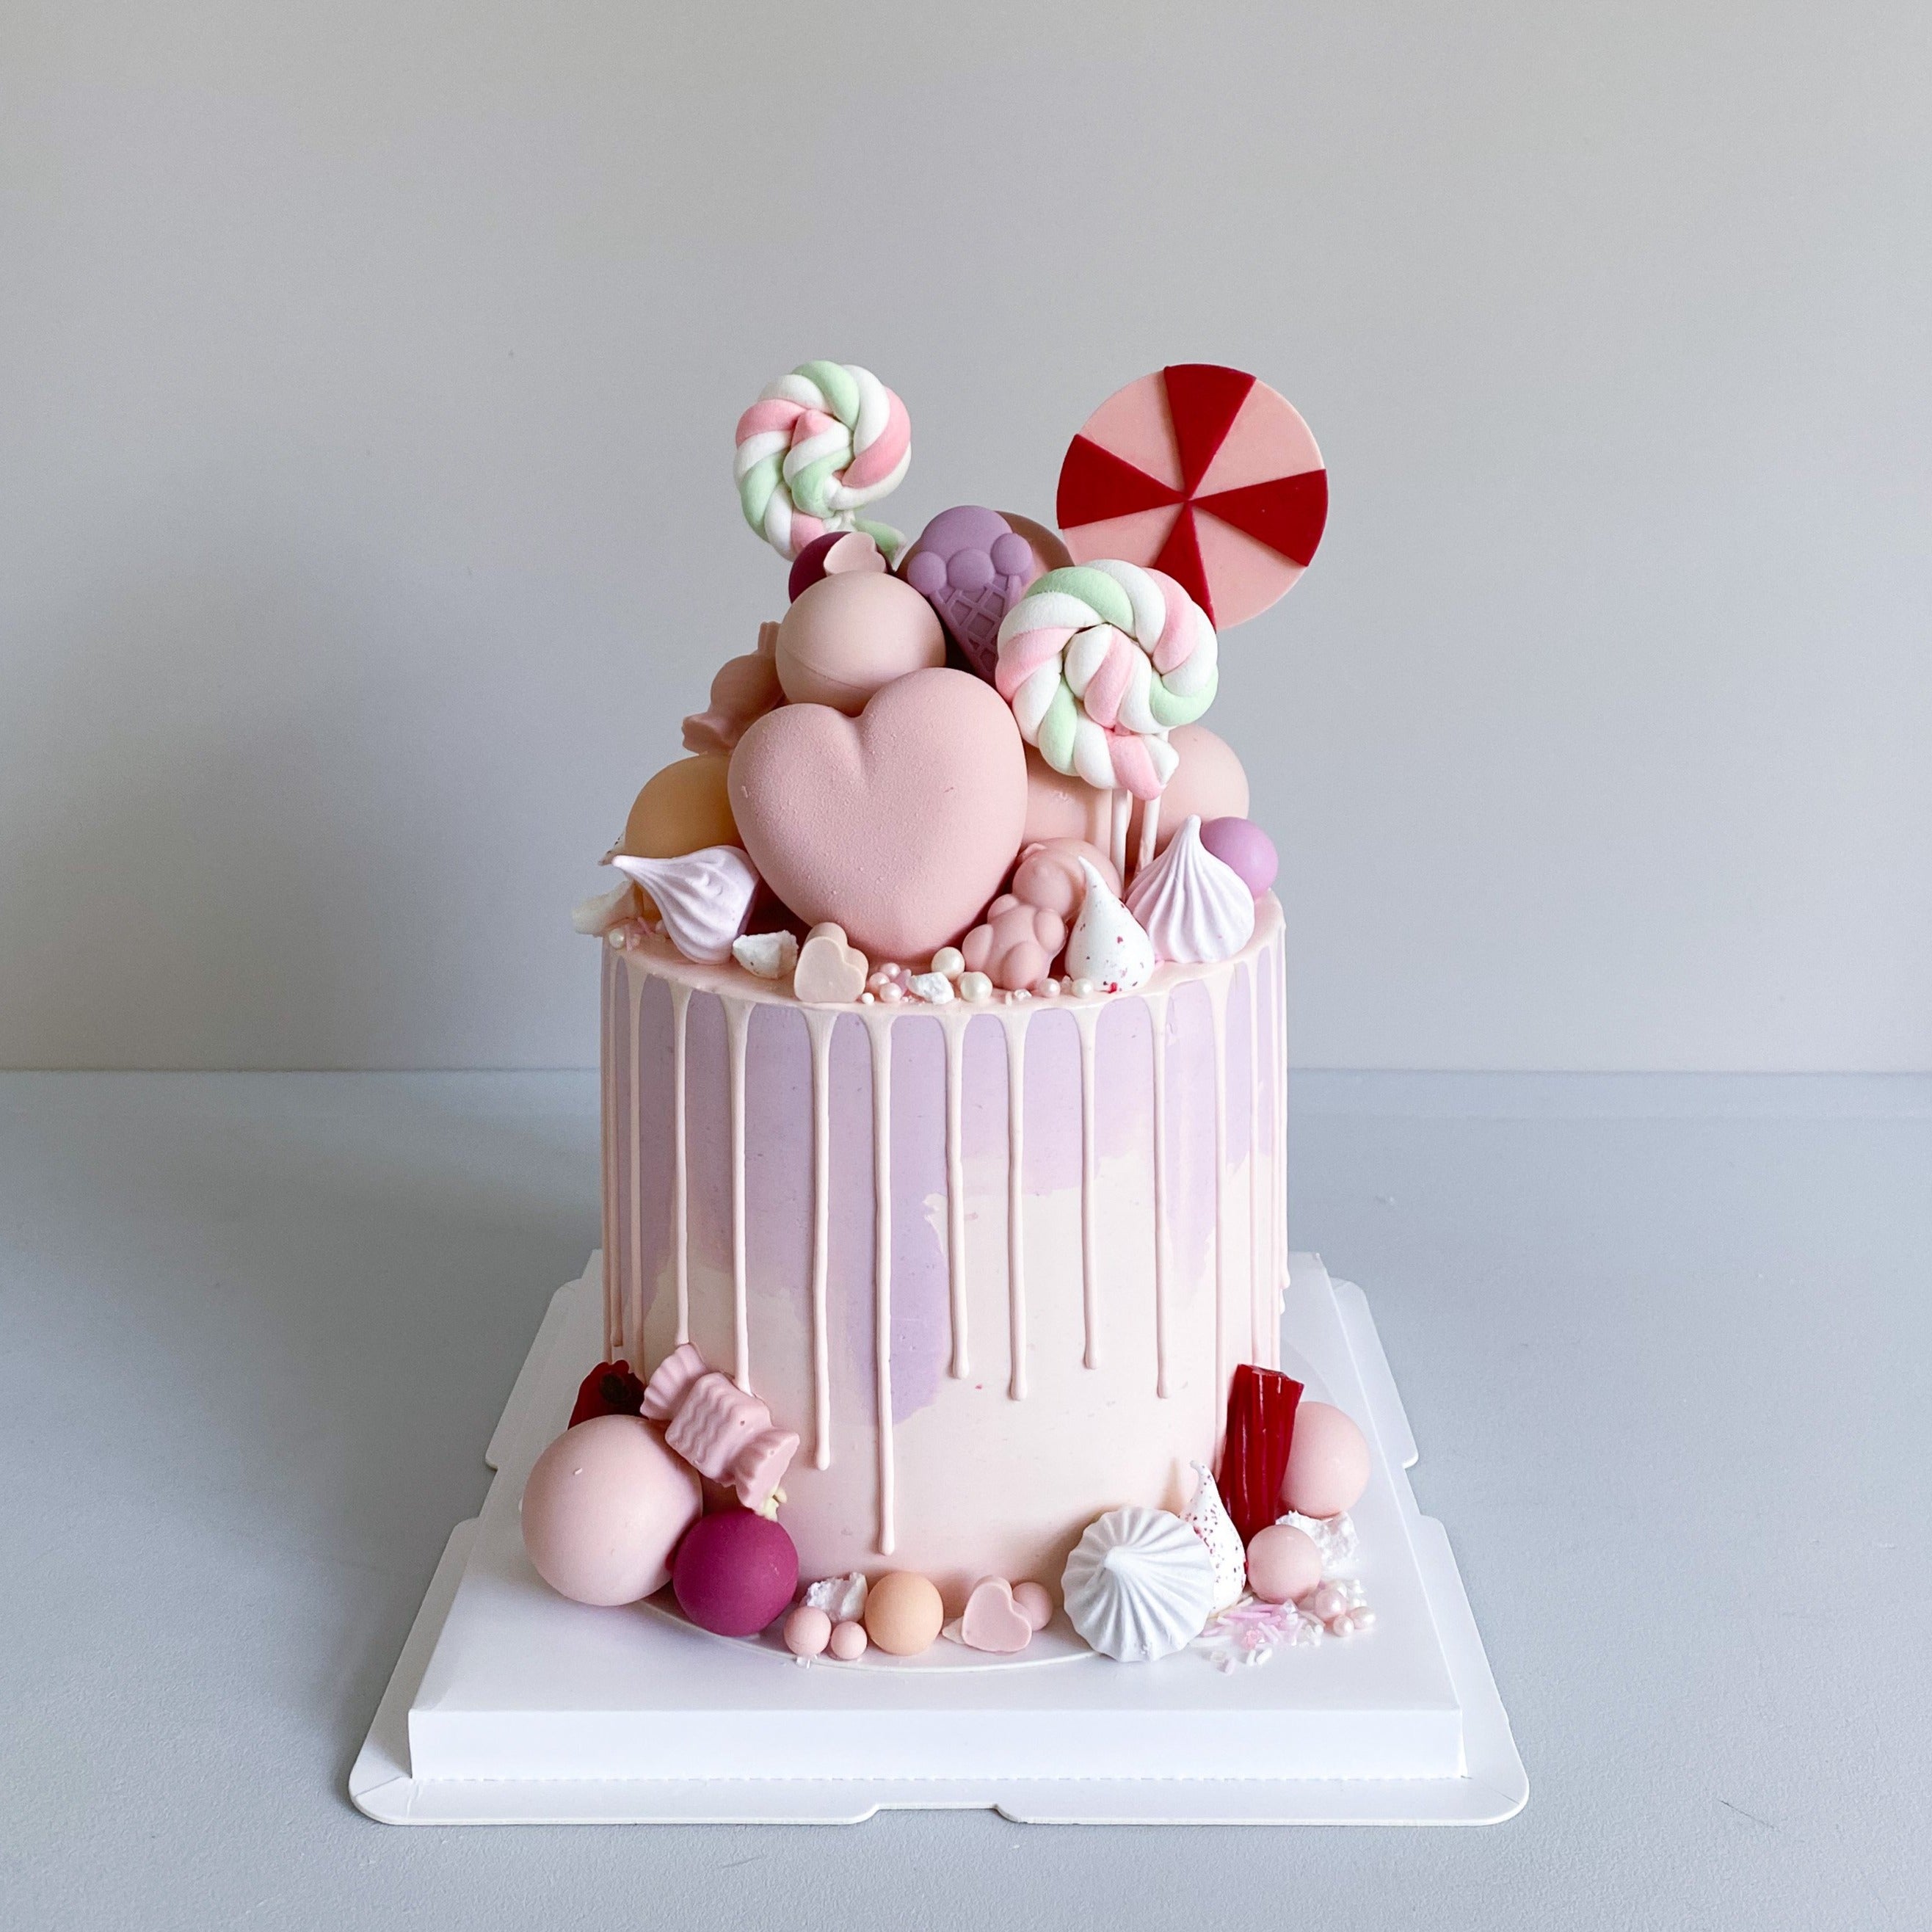 Candy Land Cake - Sweet Bites Ltd